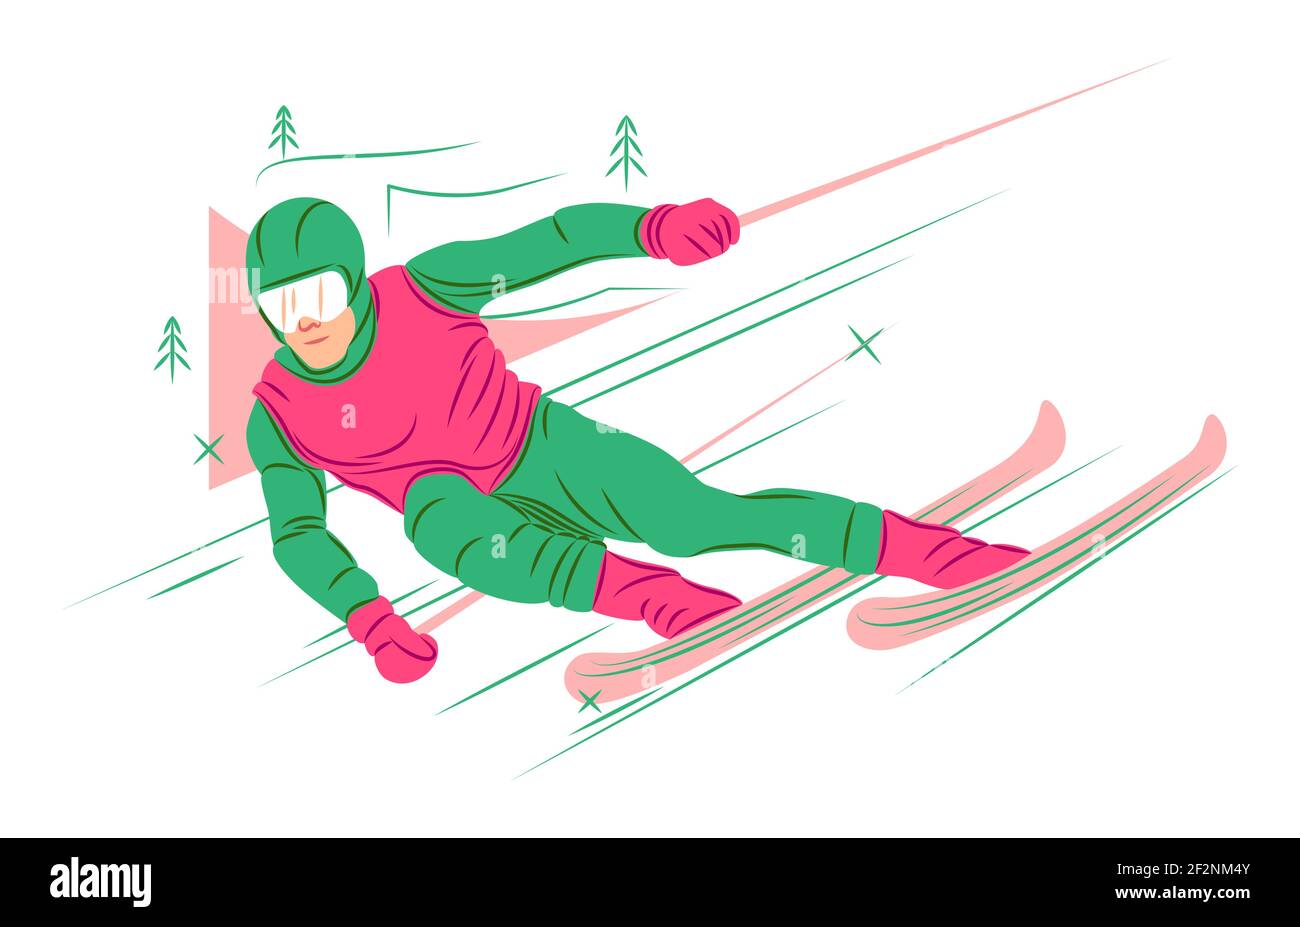 Vektor-Skifahrer im Schatten der scharfen Linien Stil Stock Vektor